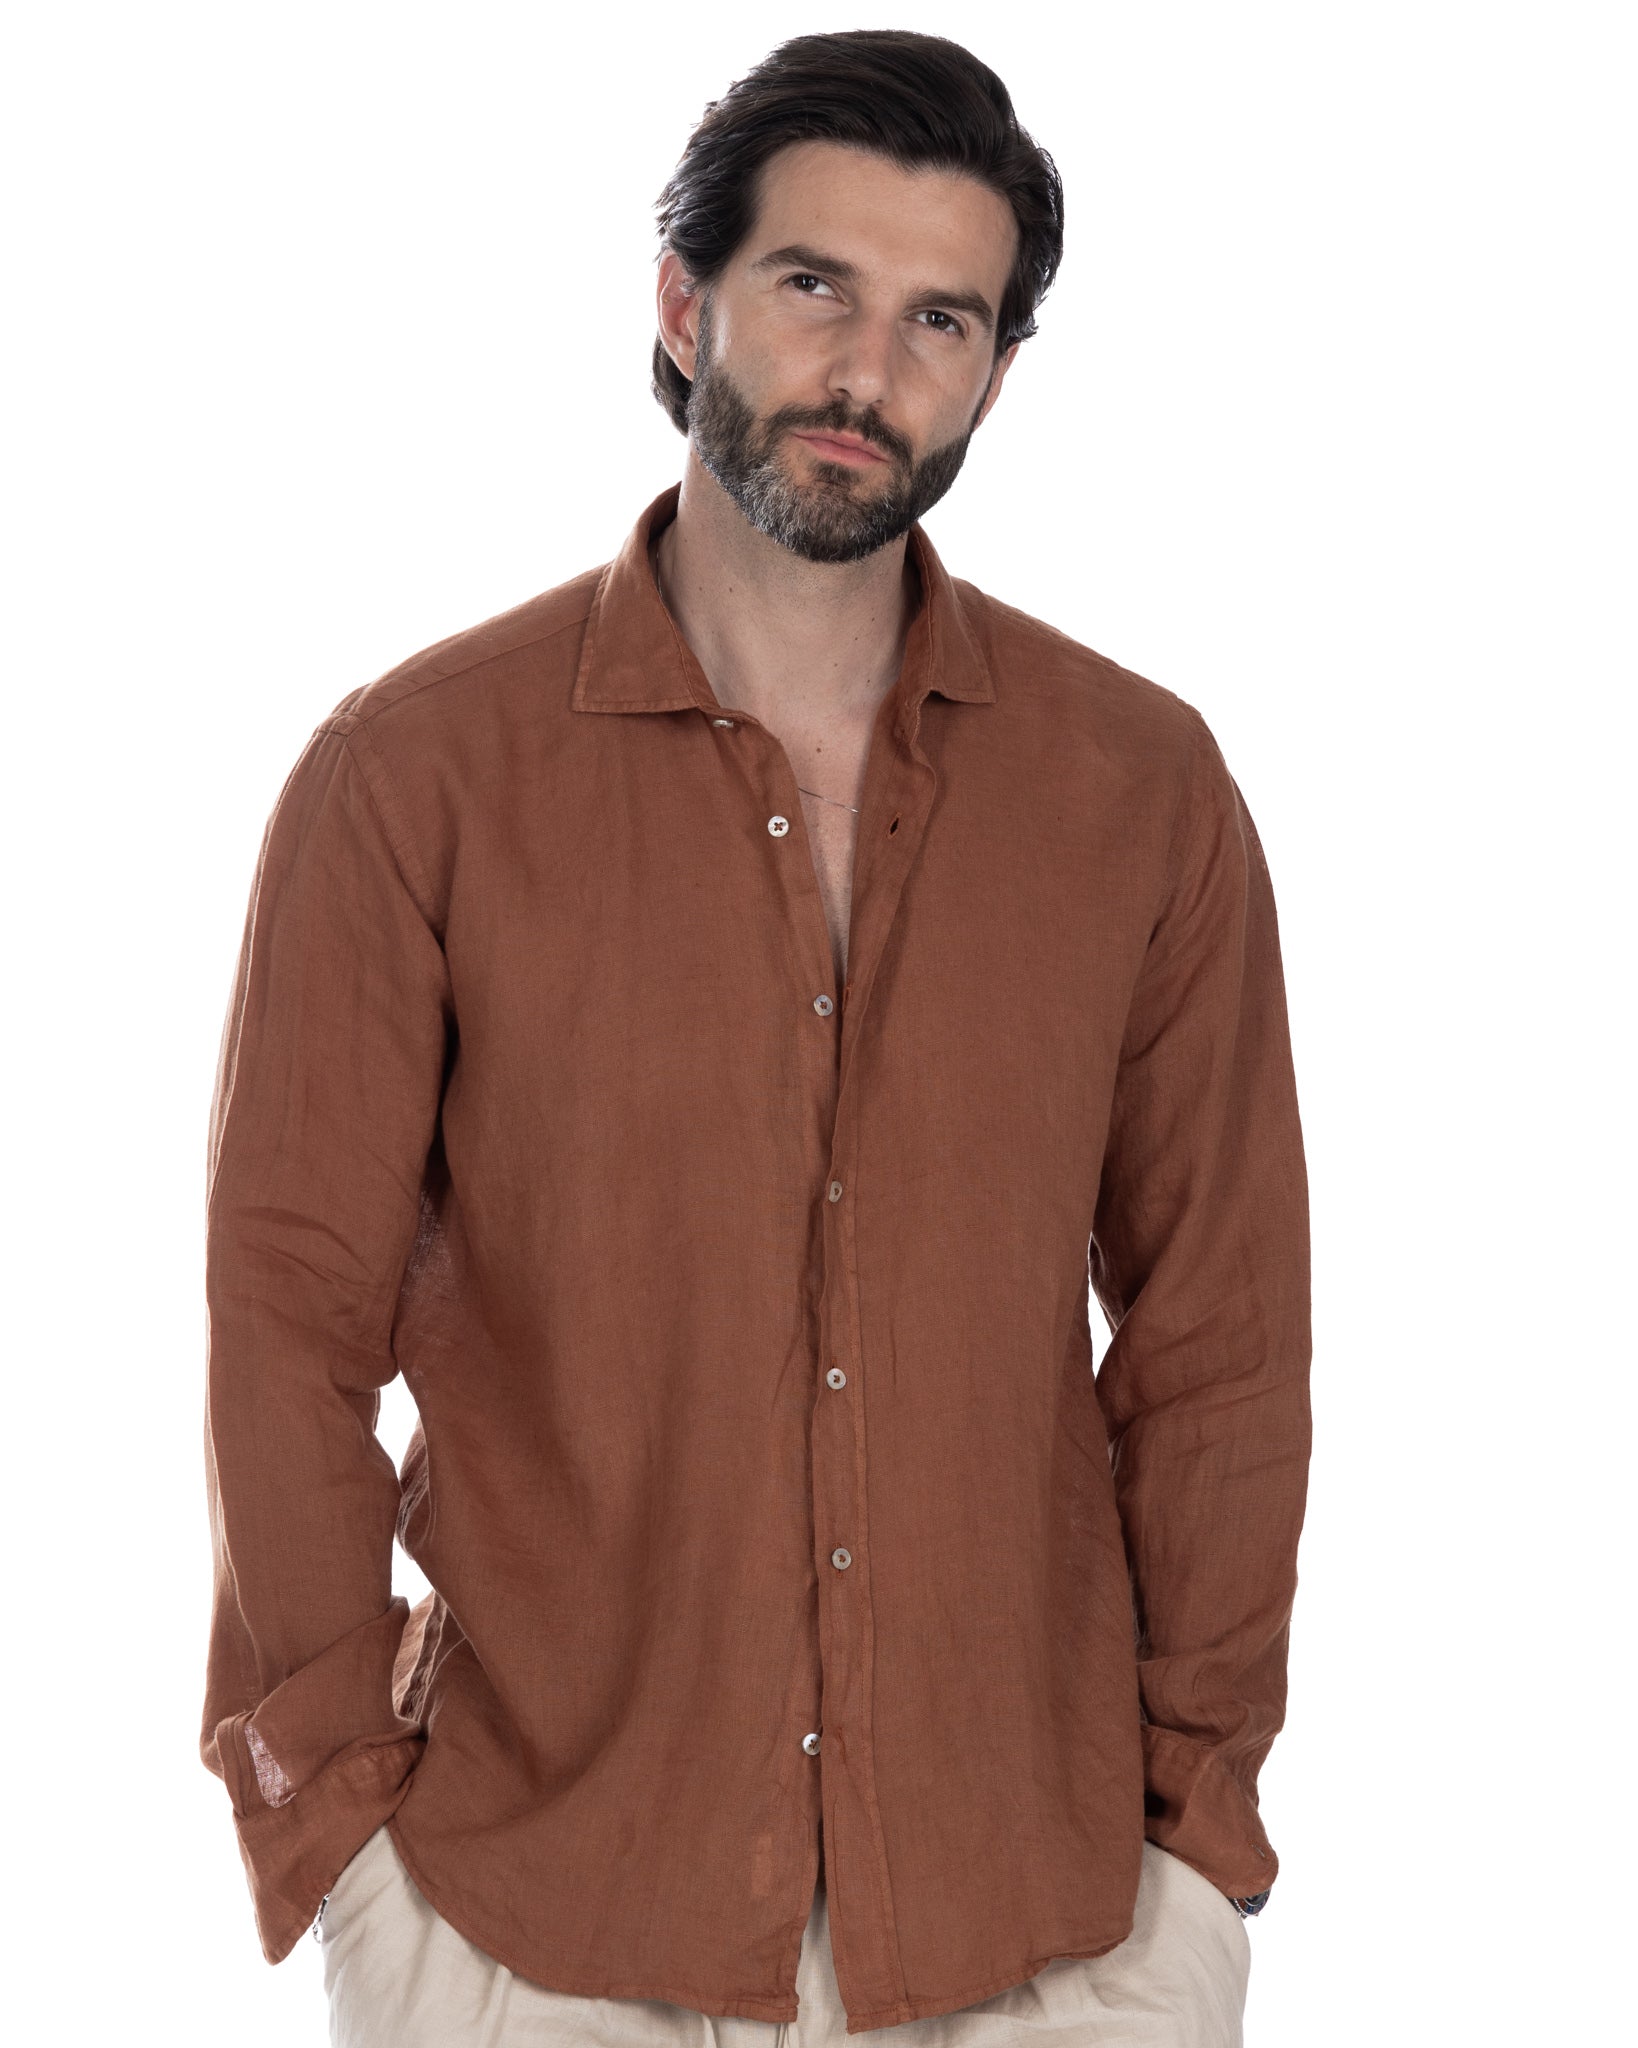 Montecarlo - shirt in pure coccio linen